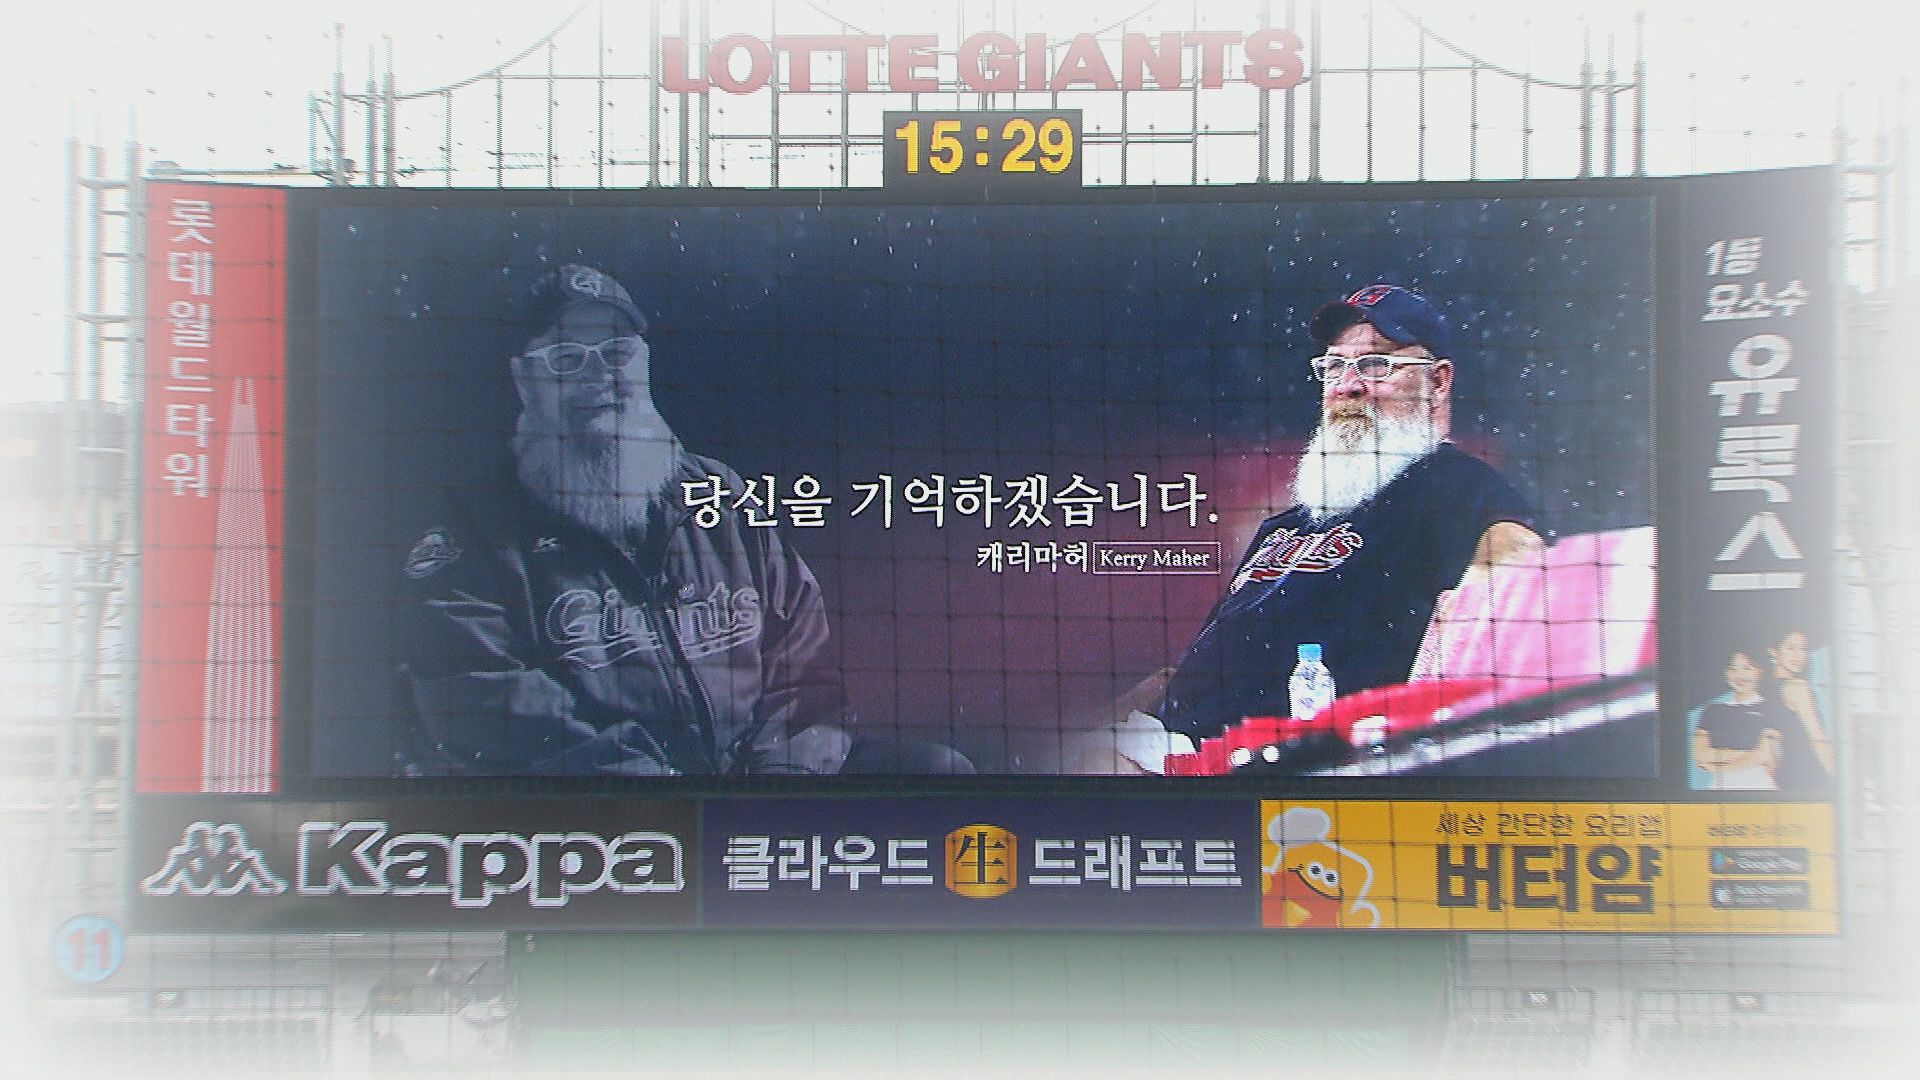 프로야구 롯데자이언츠는 18일 부산 사직구장 경기에서 케리 마허씨를 추모하는 행사를 열었다.